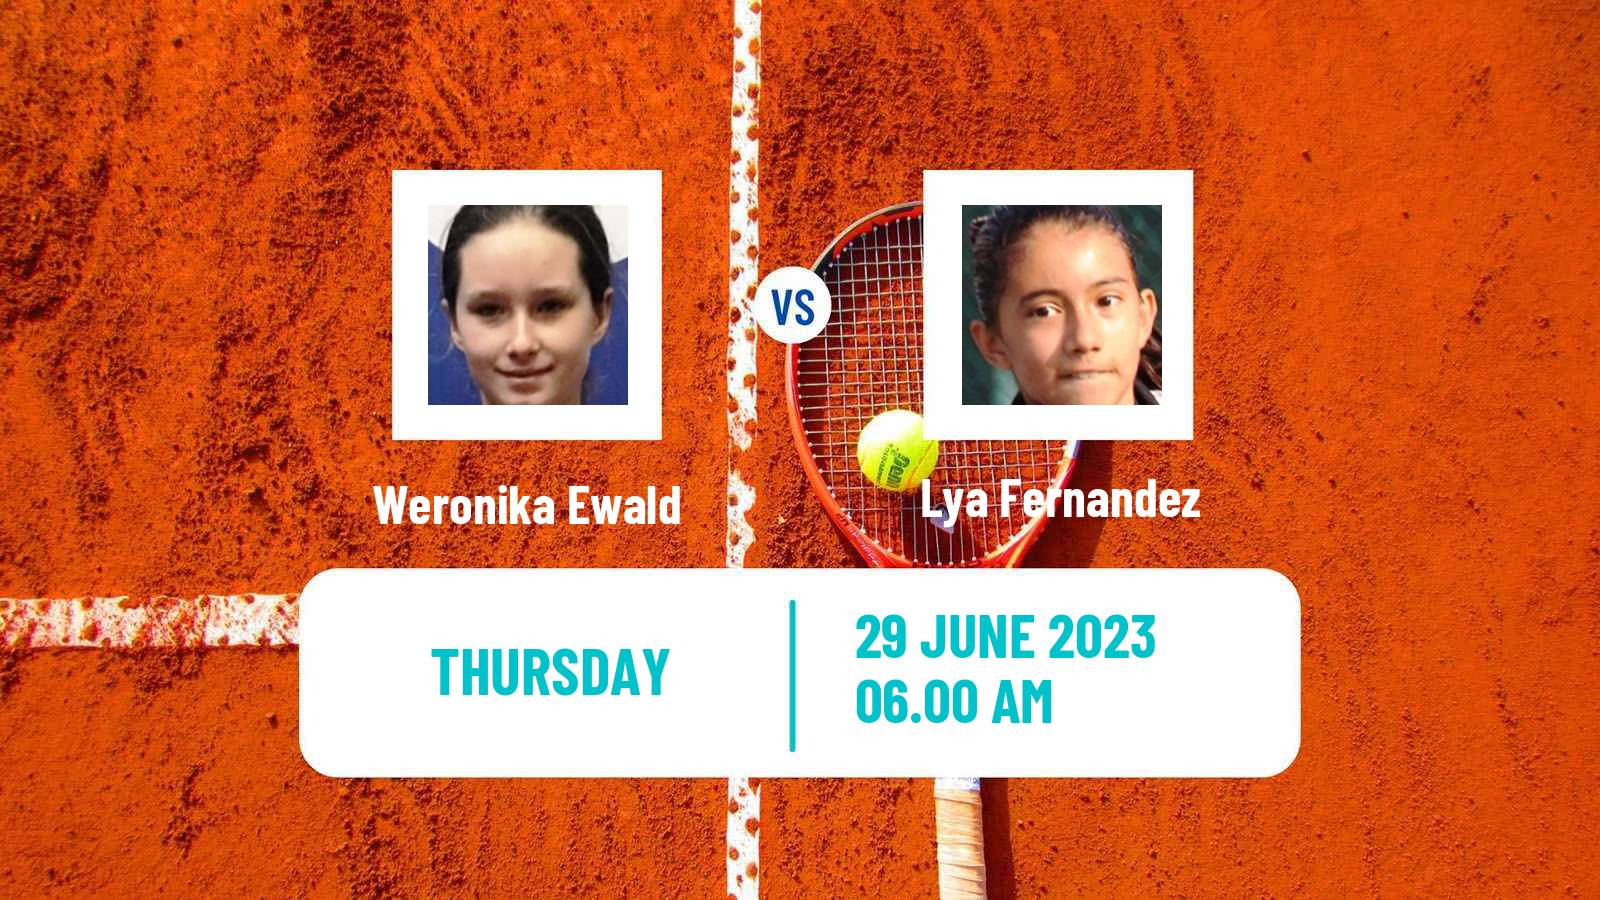 Tennis ITF W15 Monastir 21 Women Weronika Ewald - Lya Fernandez